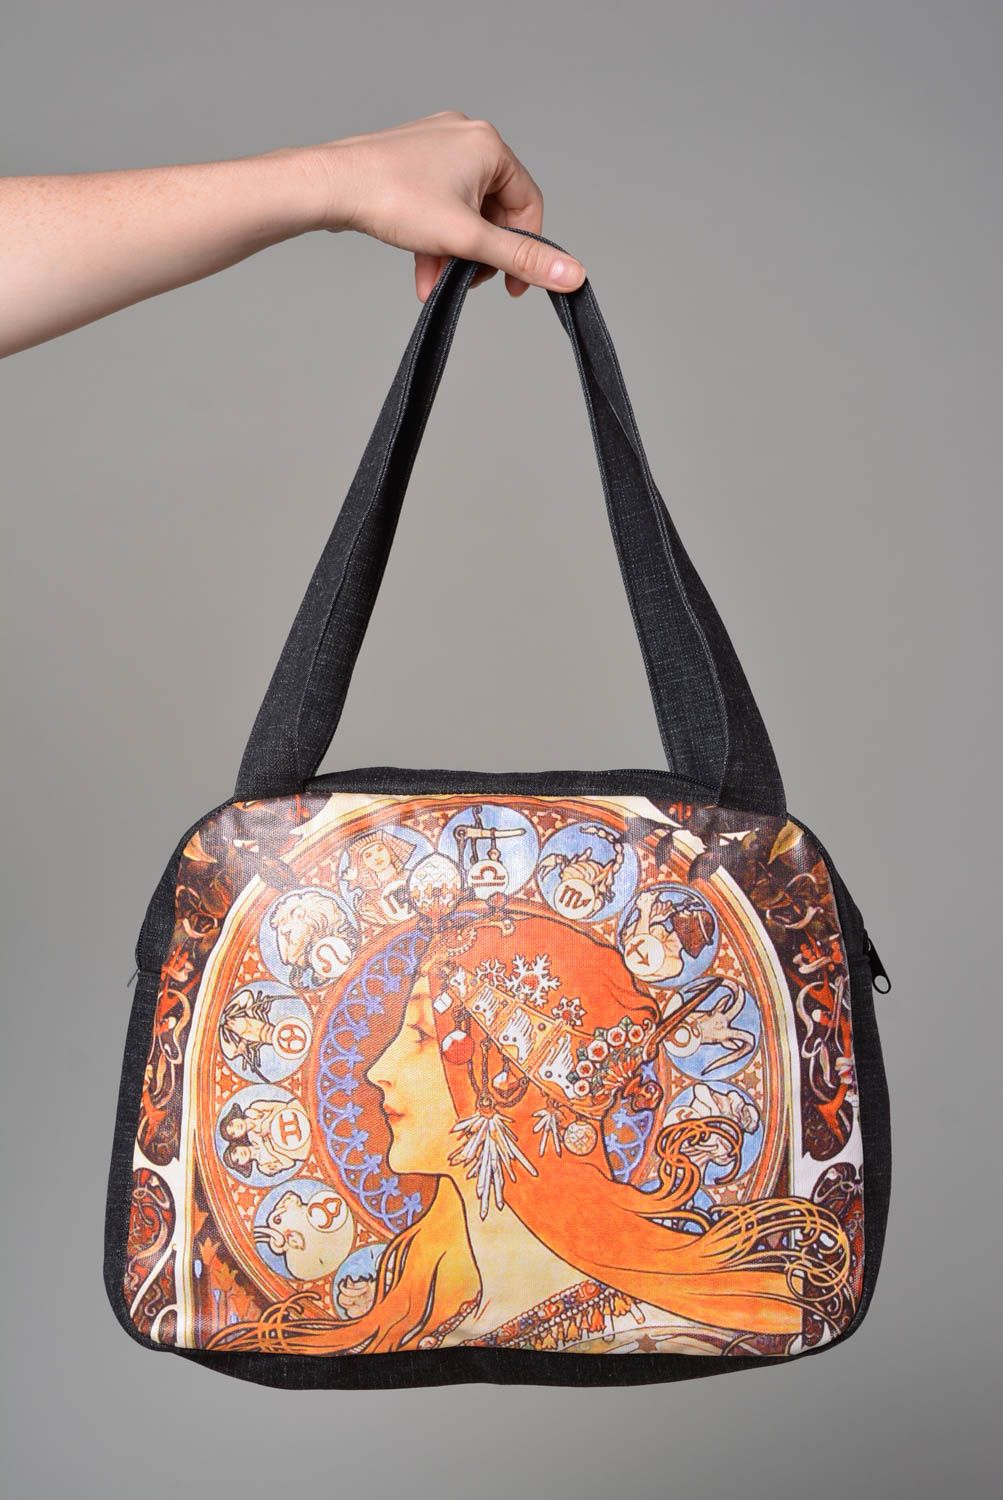 Сумка ручной работы сумка для женщины сумка с рисунком дизайнерская сумка фото 3